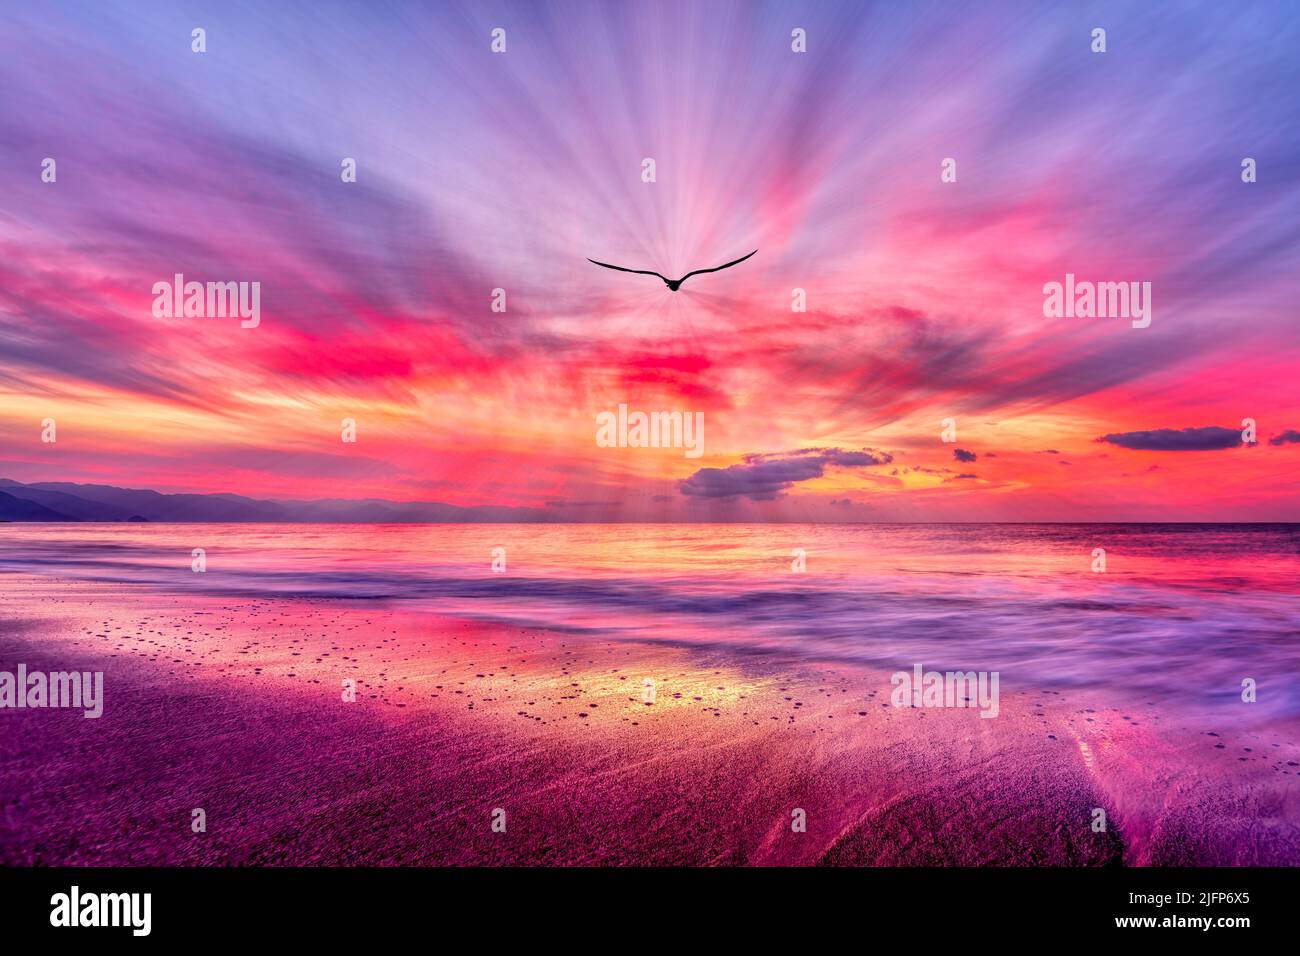 Paisaje del océano Puesta de sol con un pájaro Volando hacia Un cielo romántico y colorido en una imagen de alta resolución Foto de stock